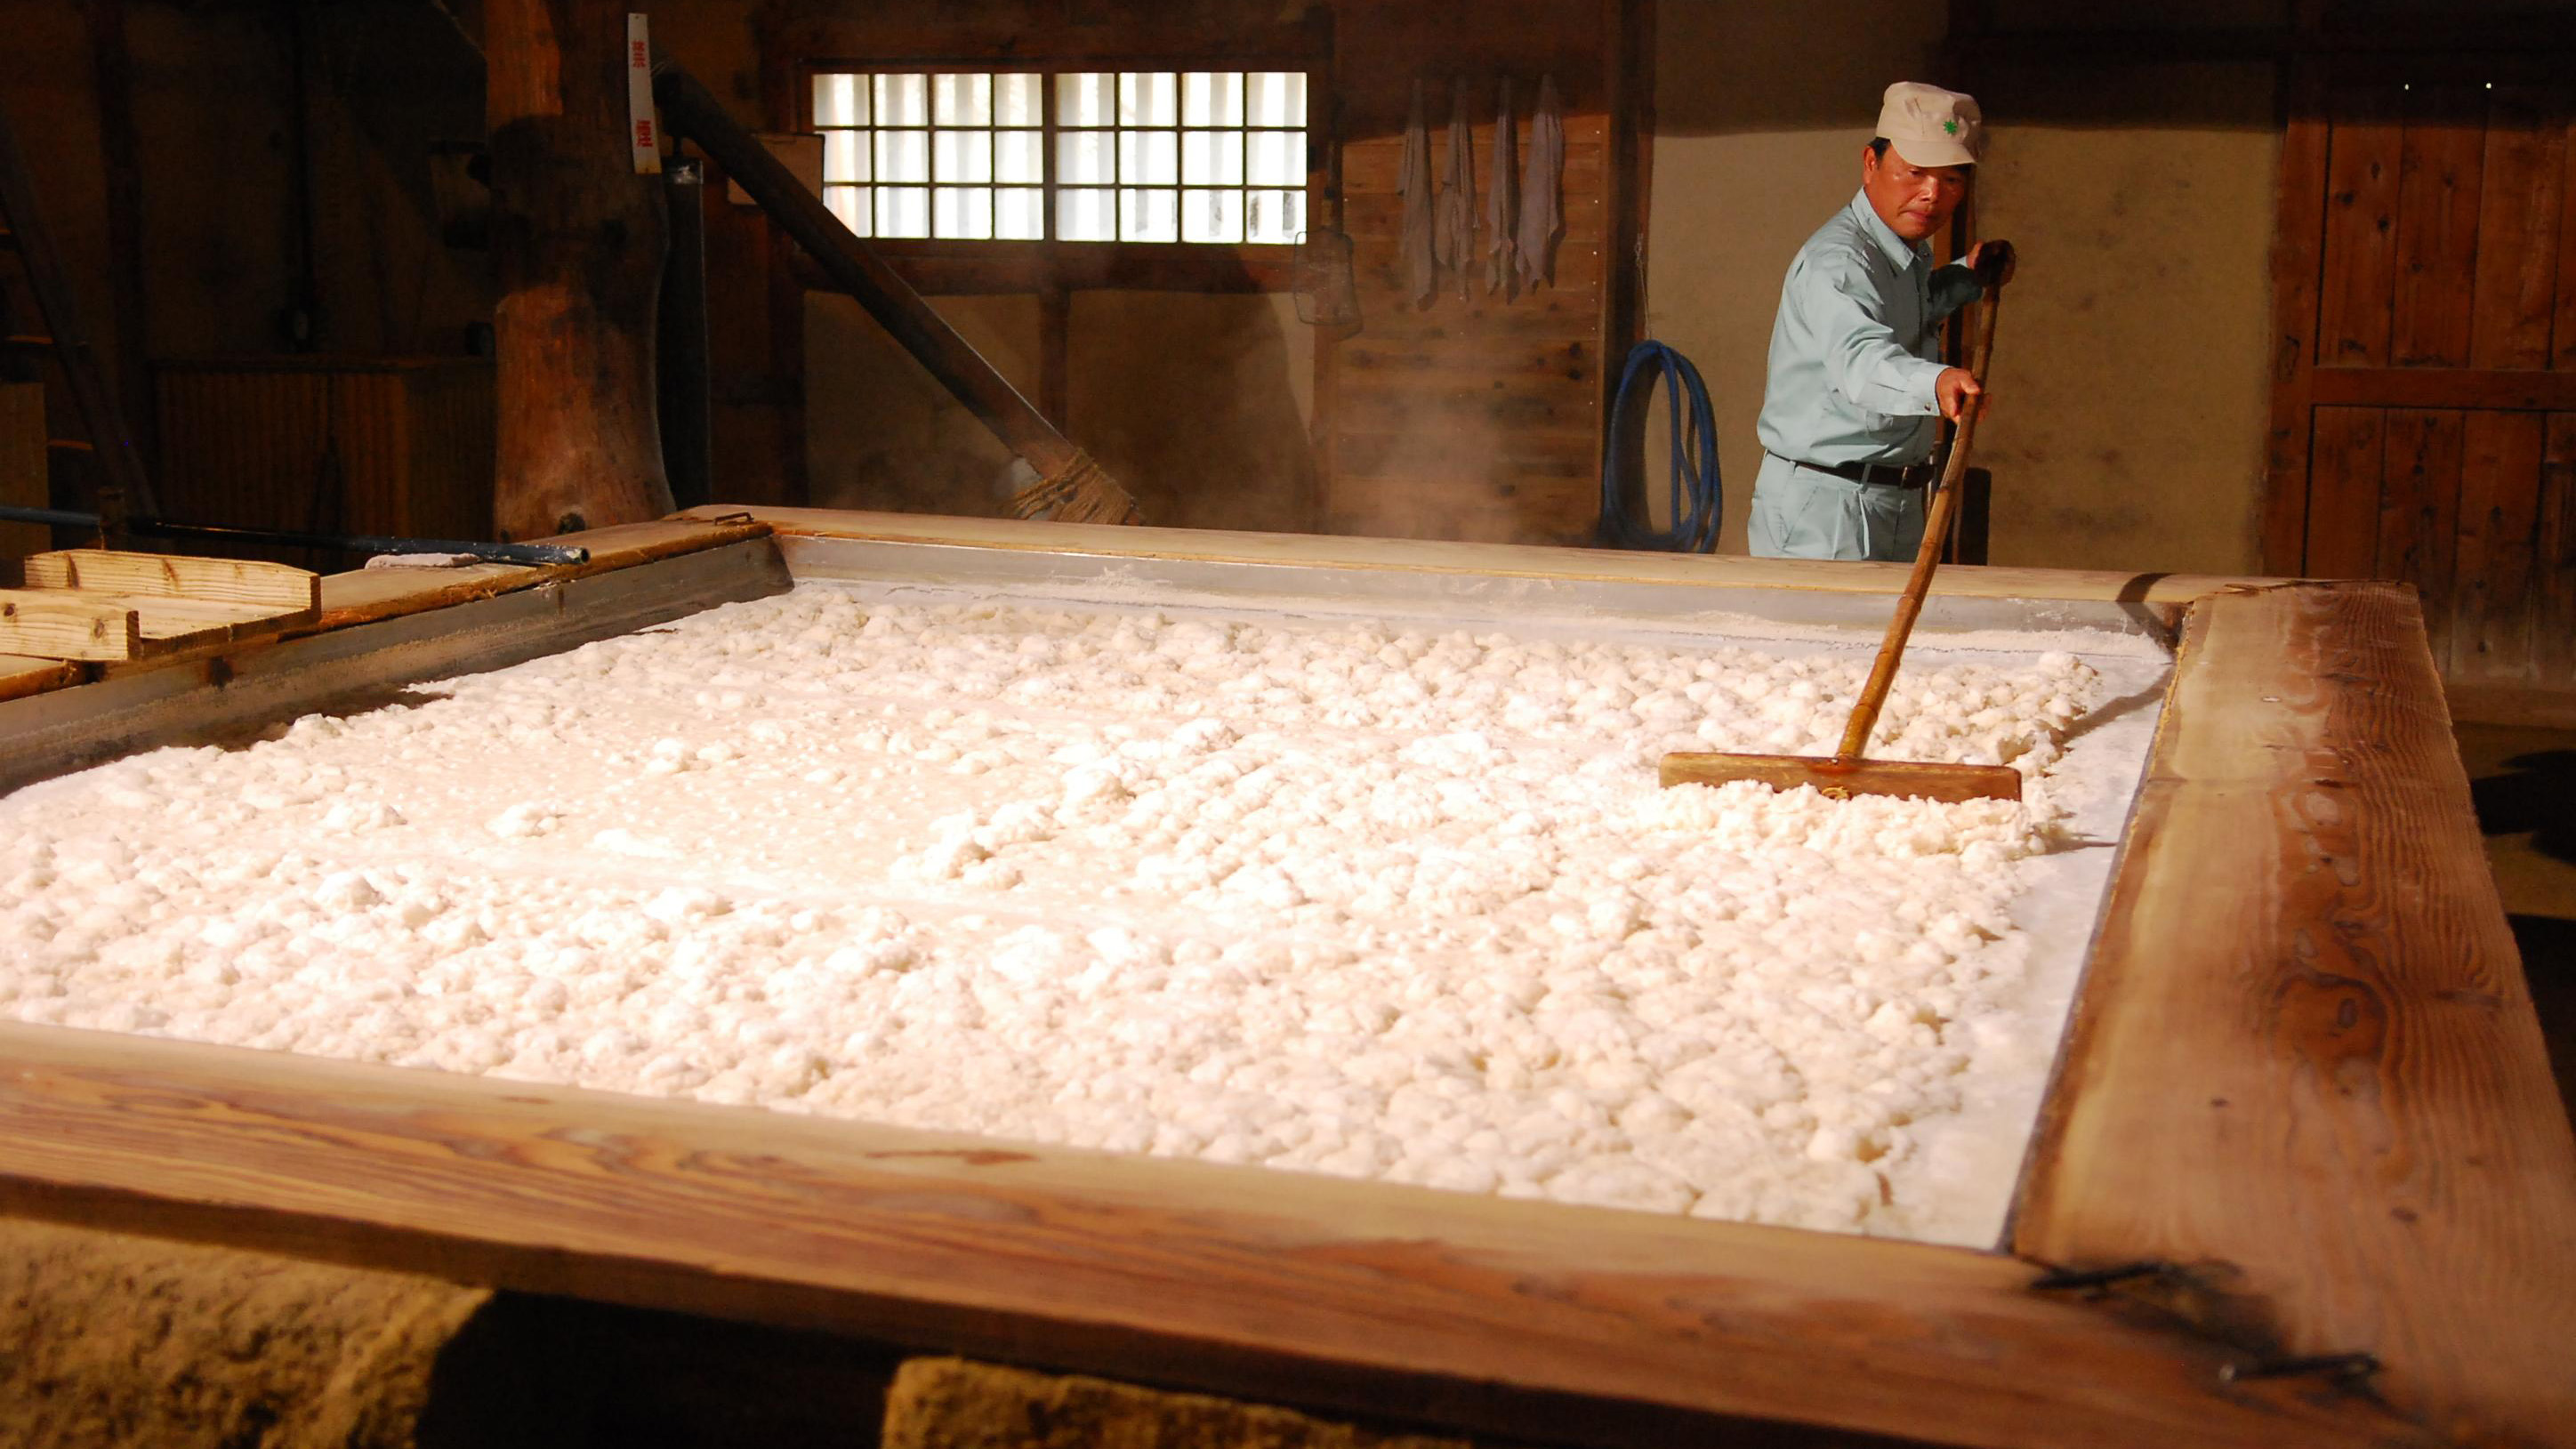  塩の国・釜揚げ風景。塩作り体験なども出来ます。